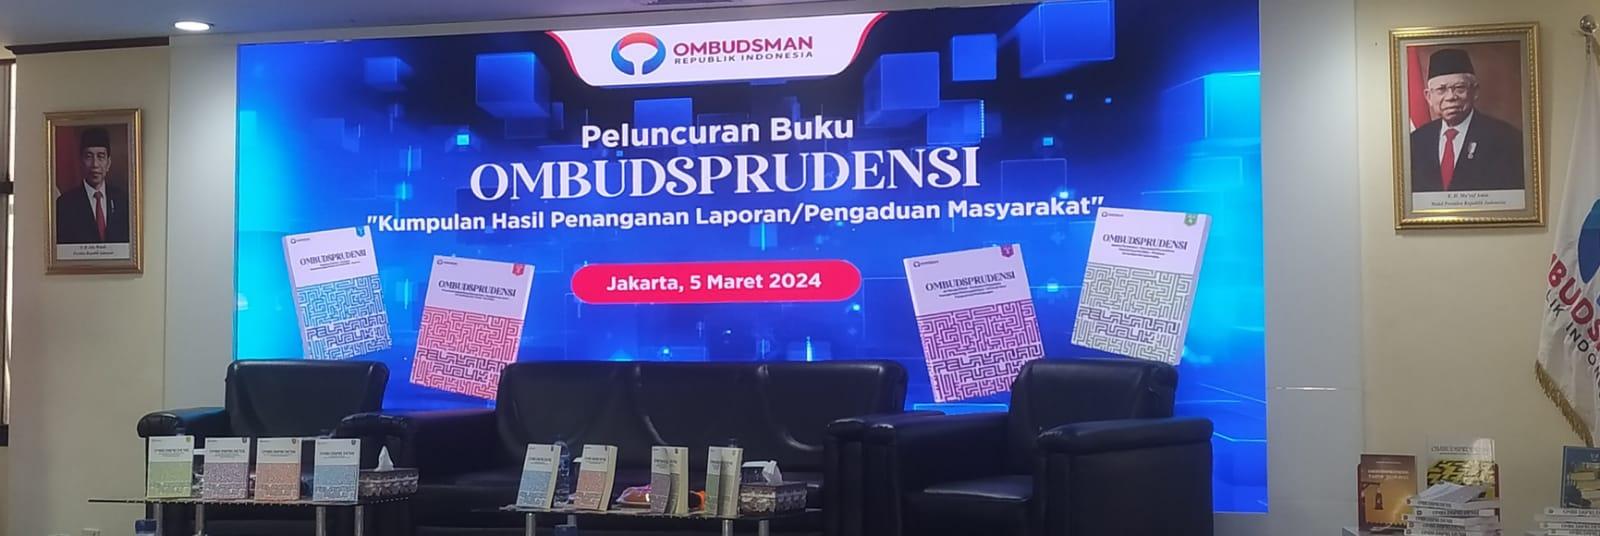 Read more about the article Ombudsman RI Mengadakan Acara Peluncuran Buku “Ombudsprudensi” Dan Juga Sekaligus Memperingati 24 Tahun Perjalanan Ombudsman RI